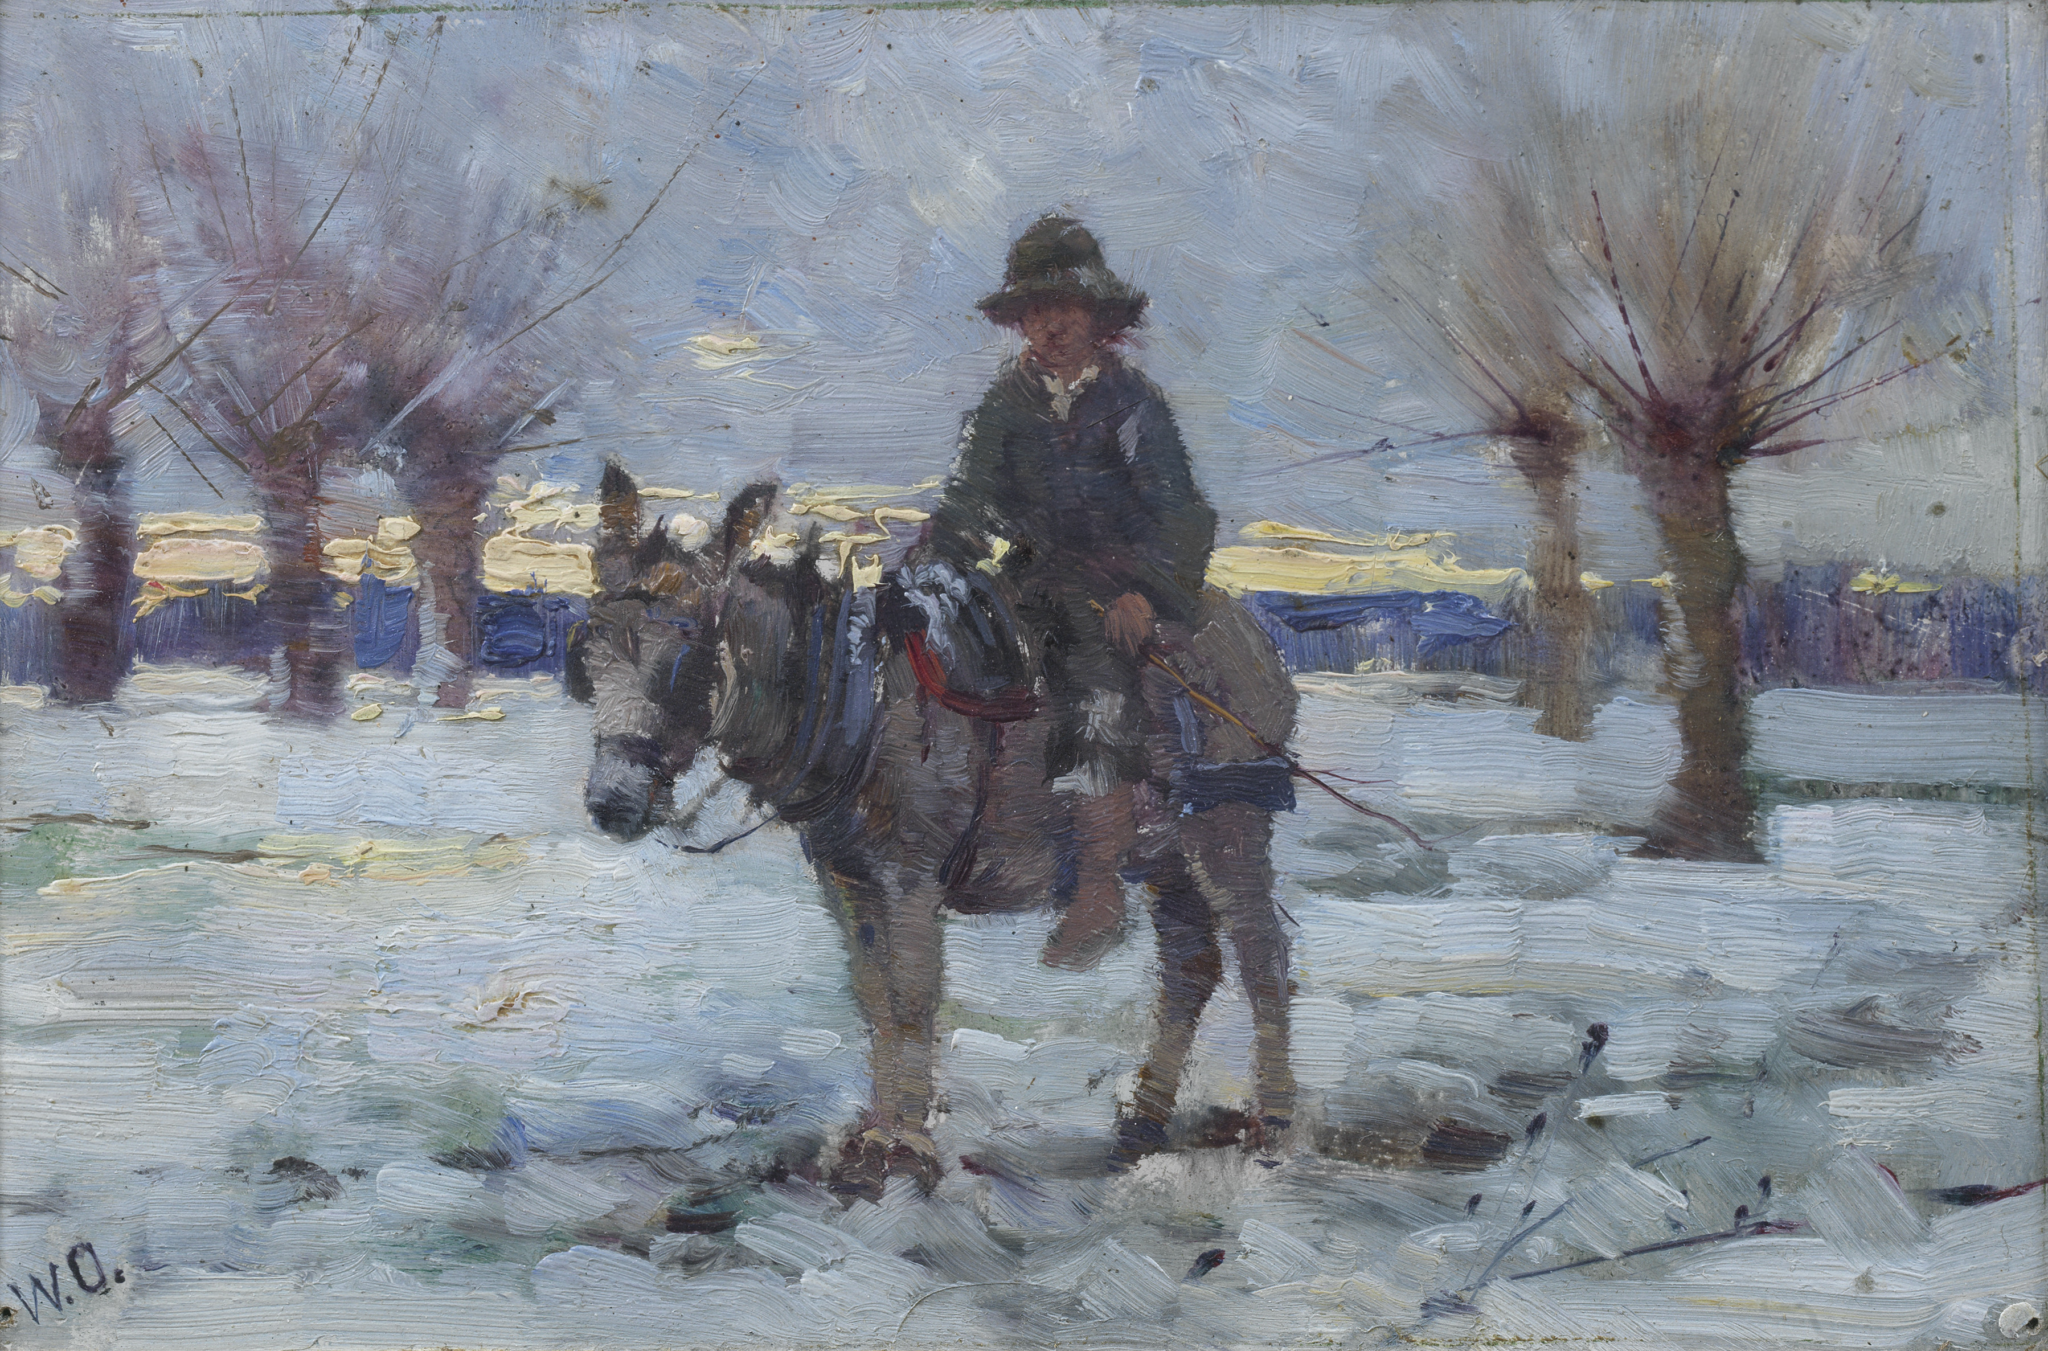 Boy on a donkey in a snowy landscape